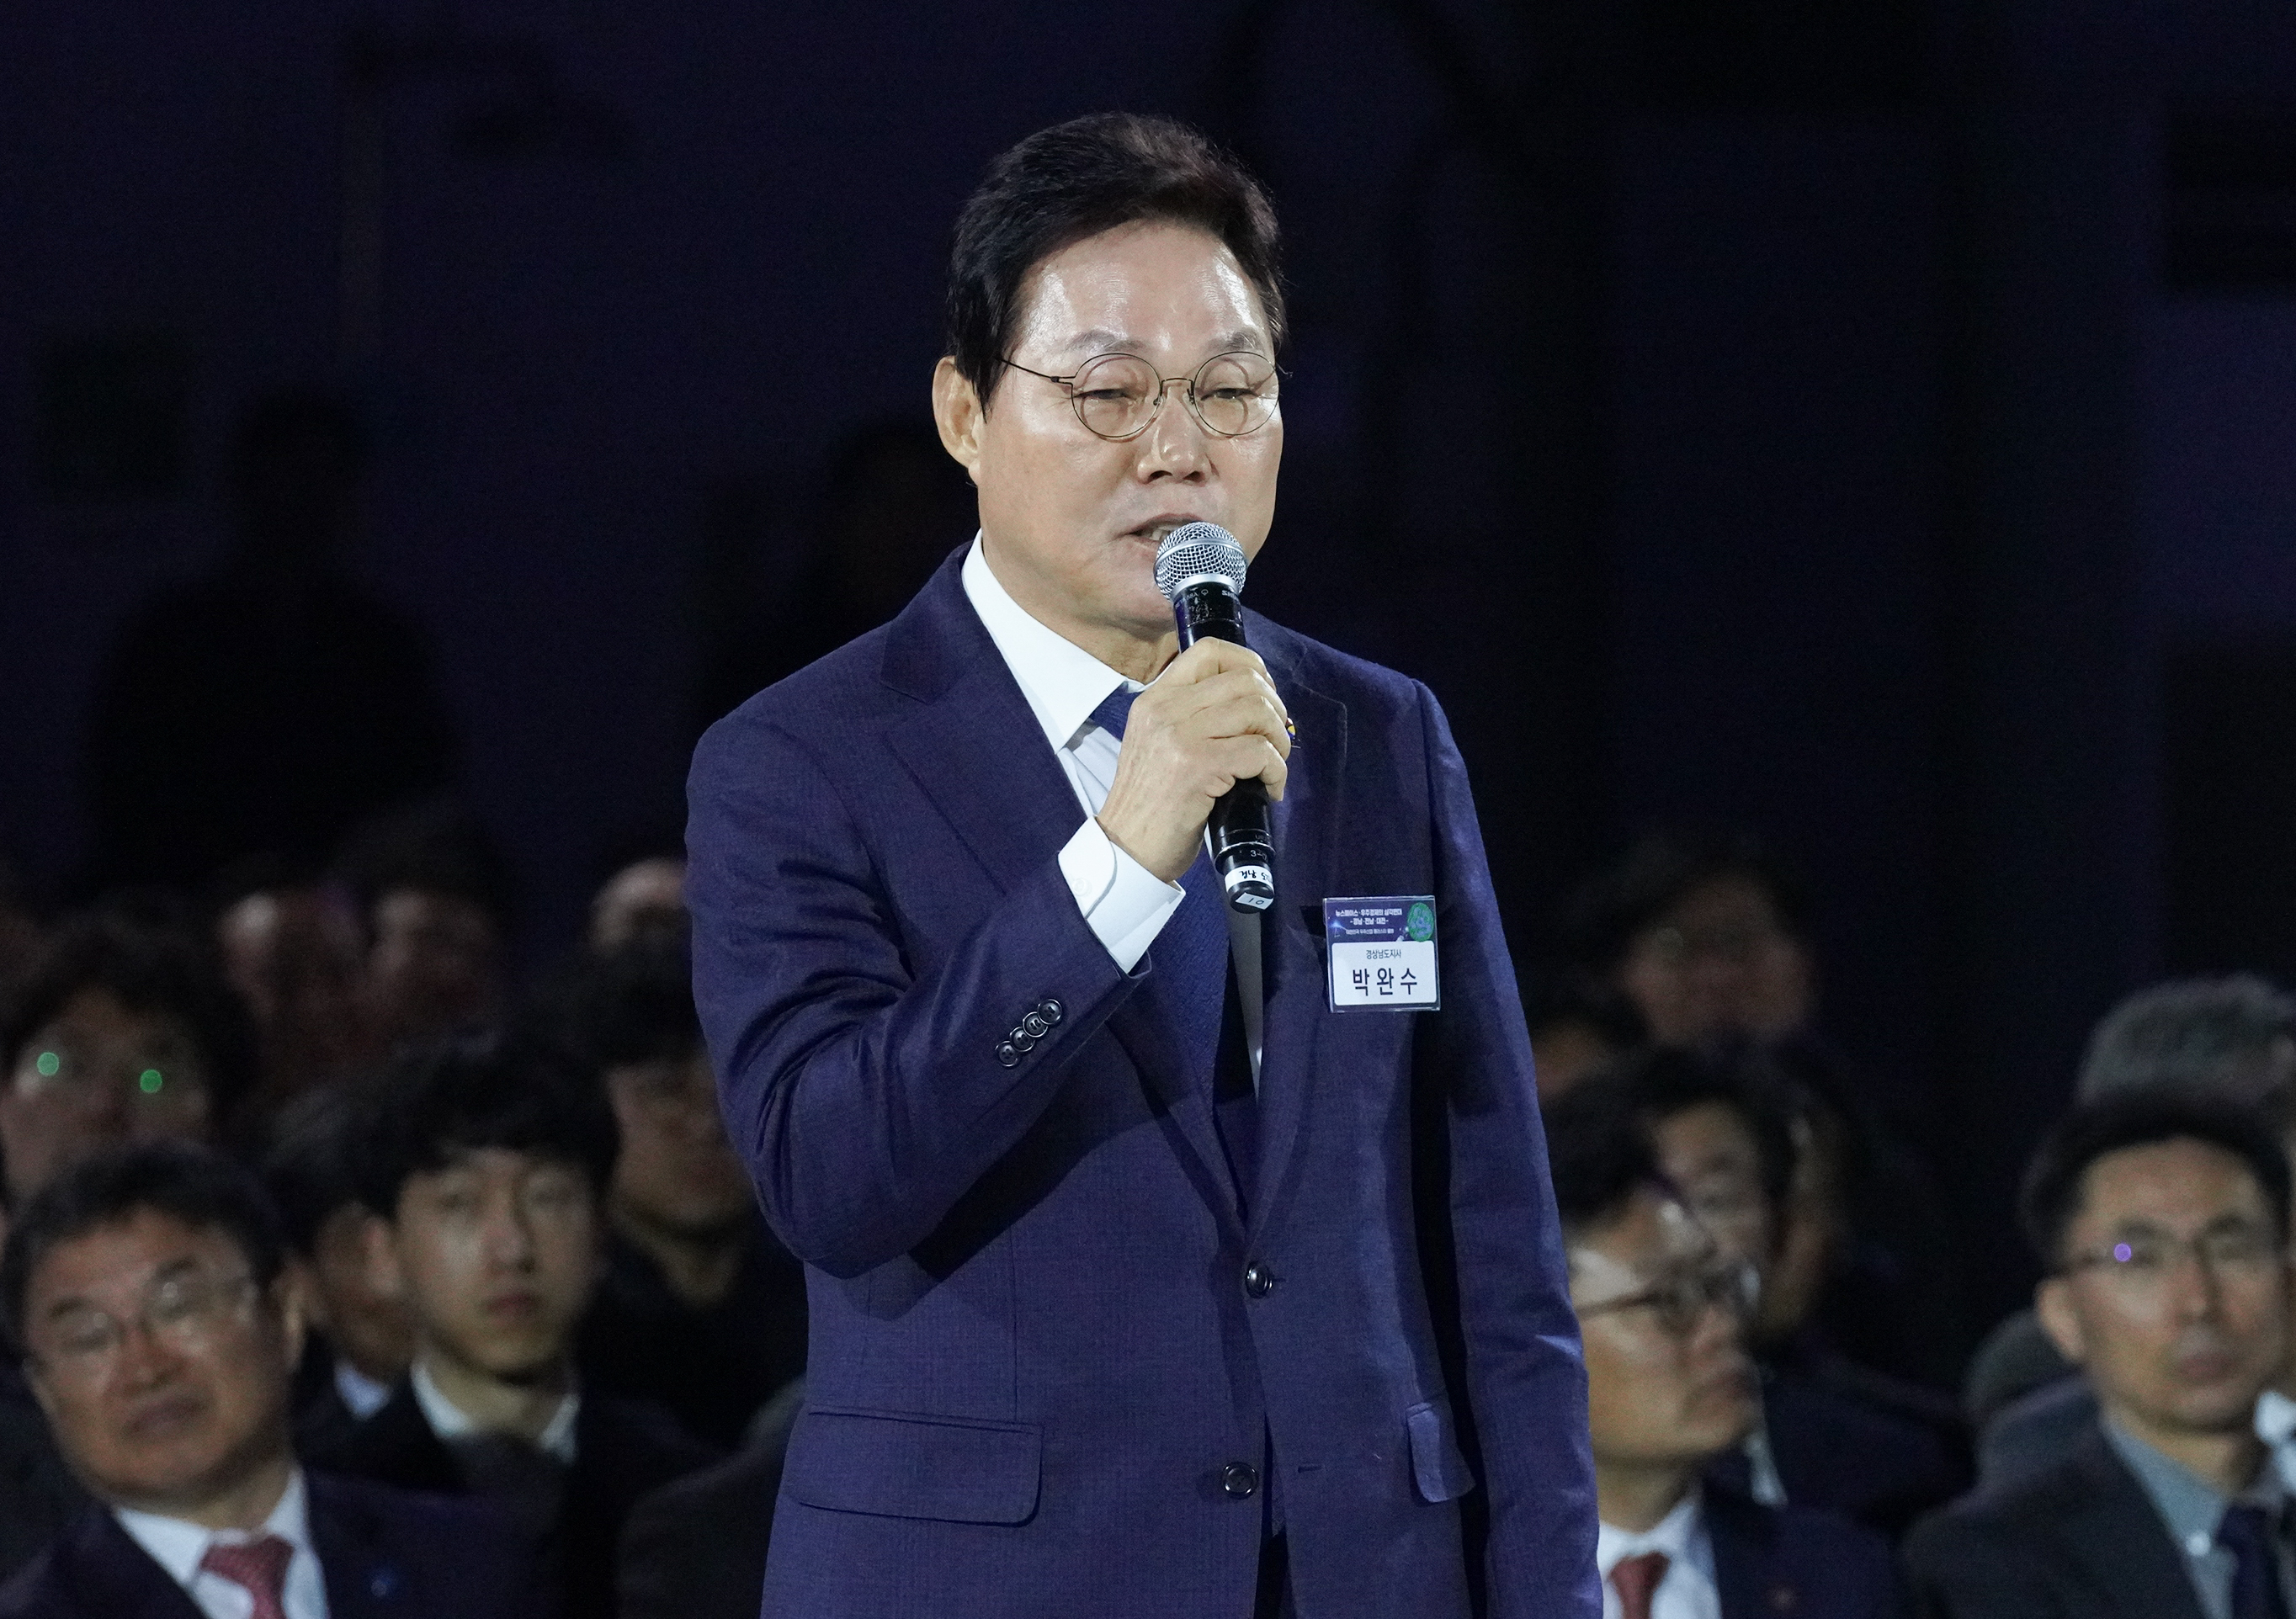 慶尚南道知事、「グローバルな宇宙航空複合都市を作っていきたい」 … 「韓国宇宙産業クラスター」の発足式を開催의 파일 이미지